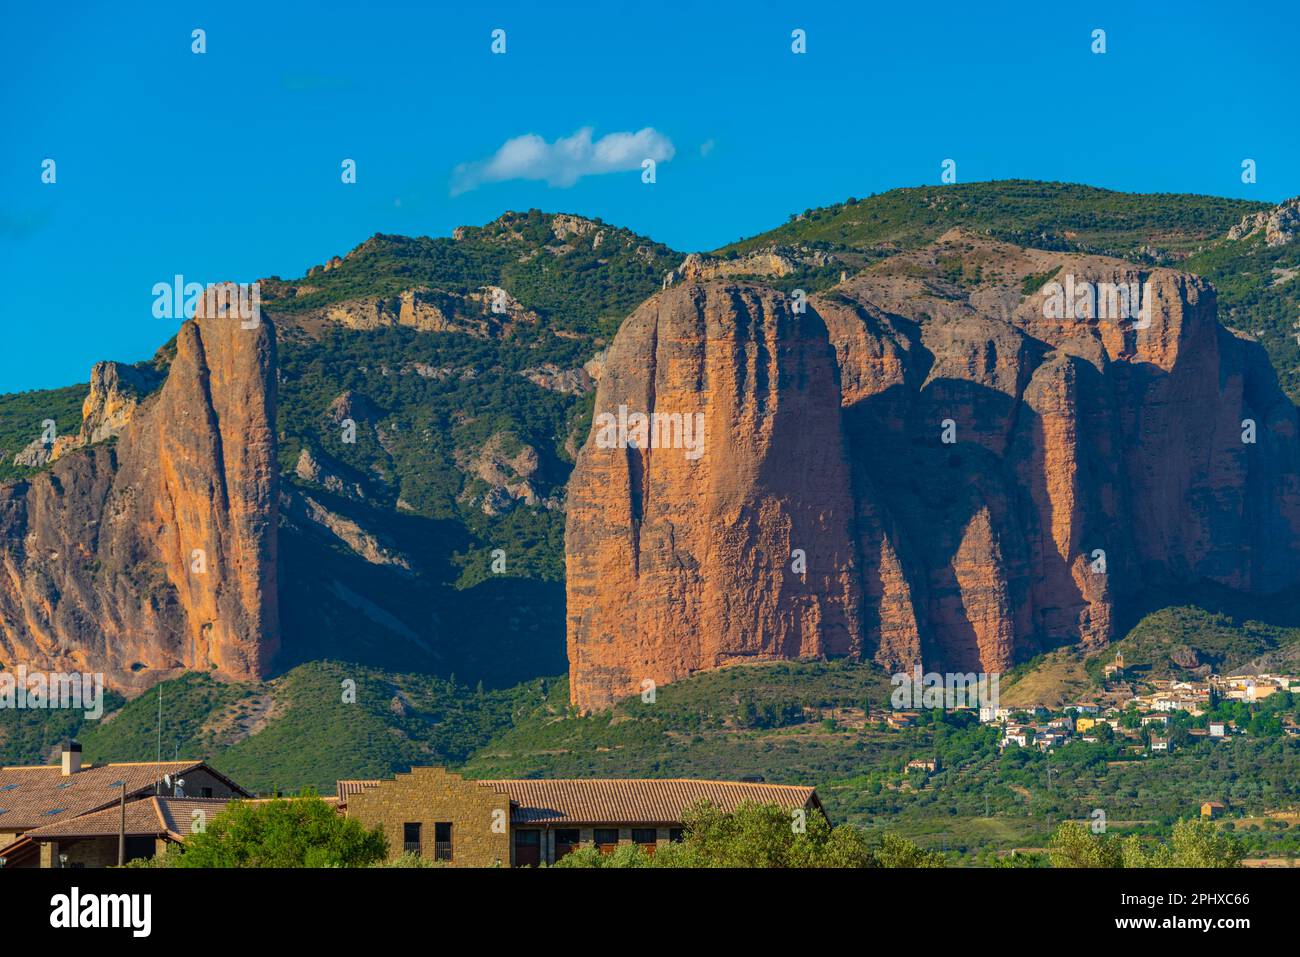 mallos de riglos cliffs in Spain. Stock Photo